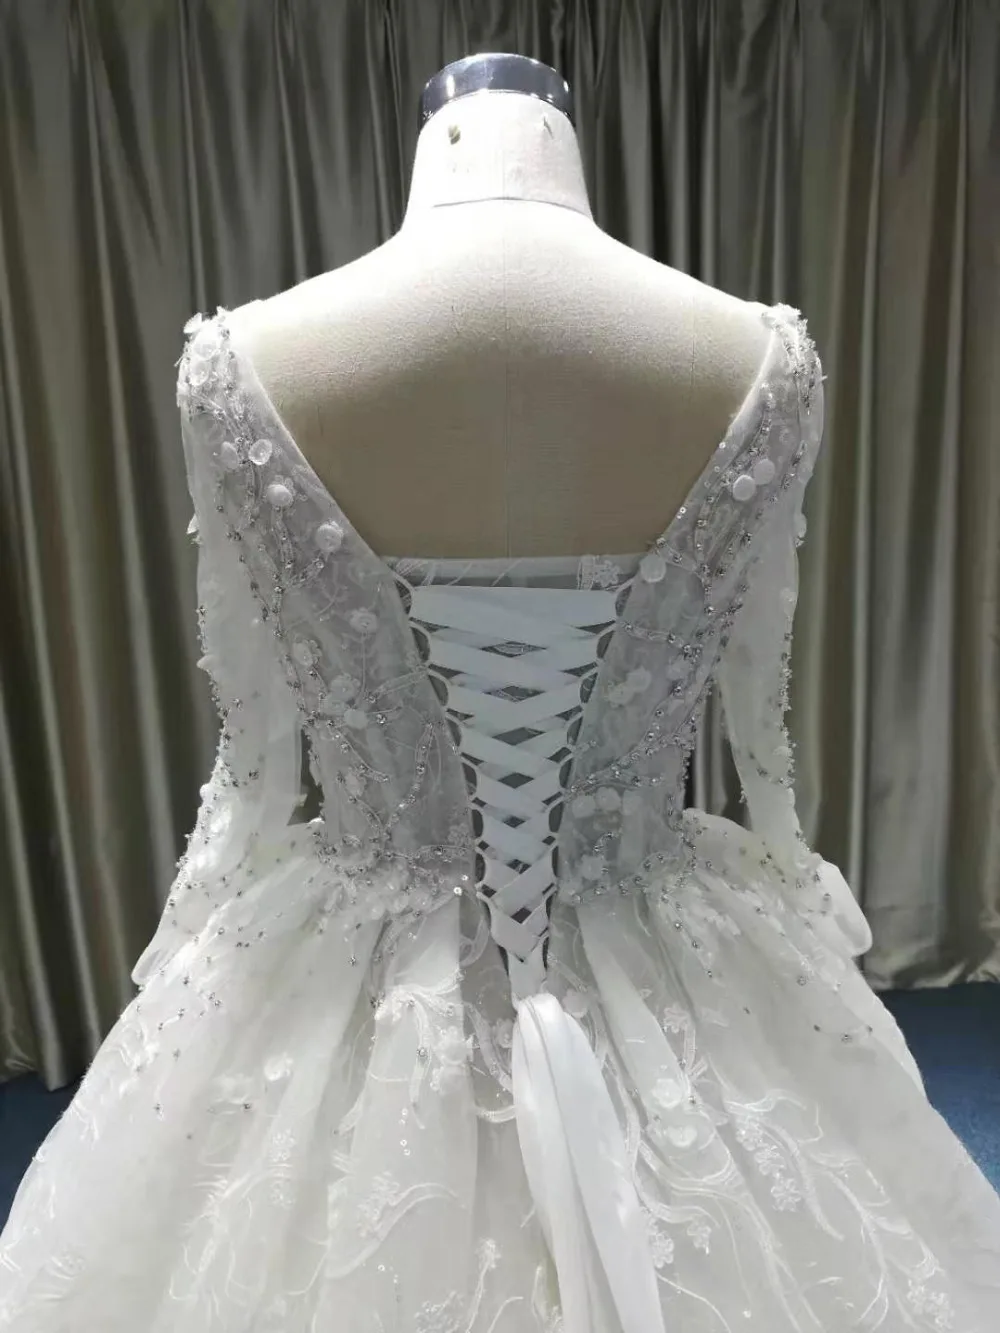 Eslieb Элегантный 3d цветок кружево свадебное платье 2019 бальное одежда с длинным рукавом Vestido de Noiva Свадебные платья Сделано в Китай, Гуанчжоу